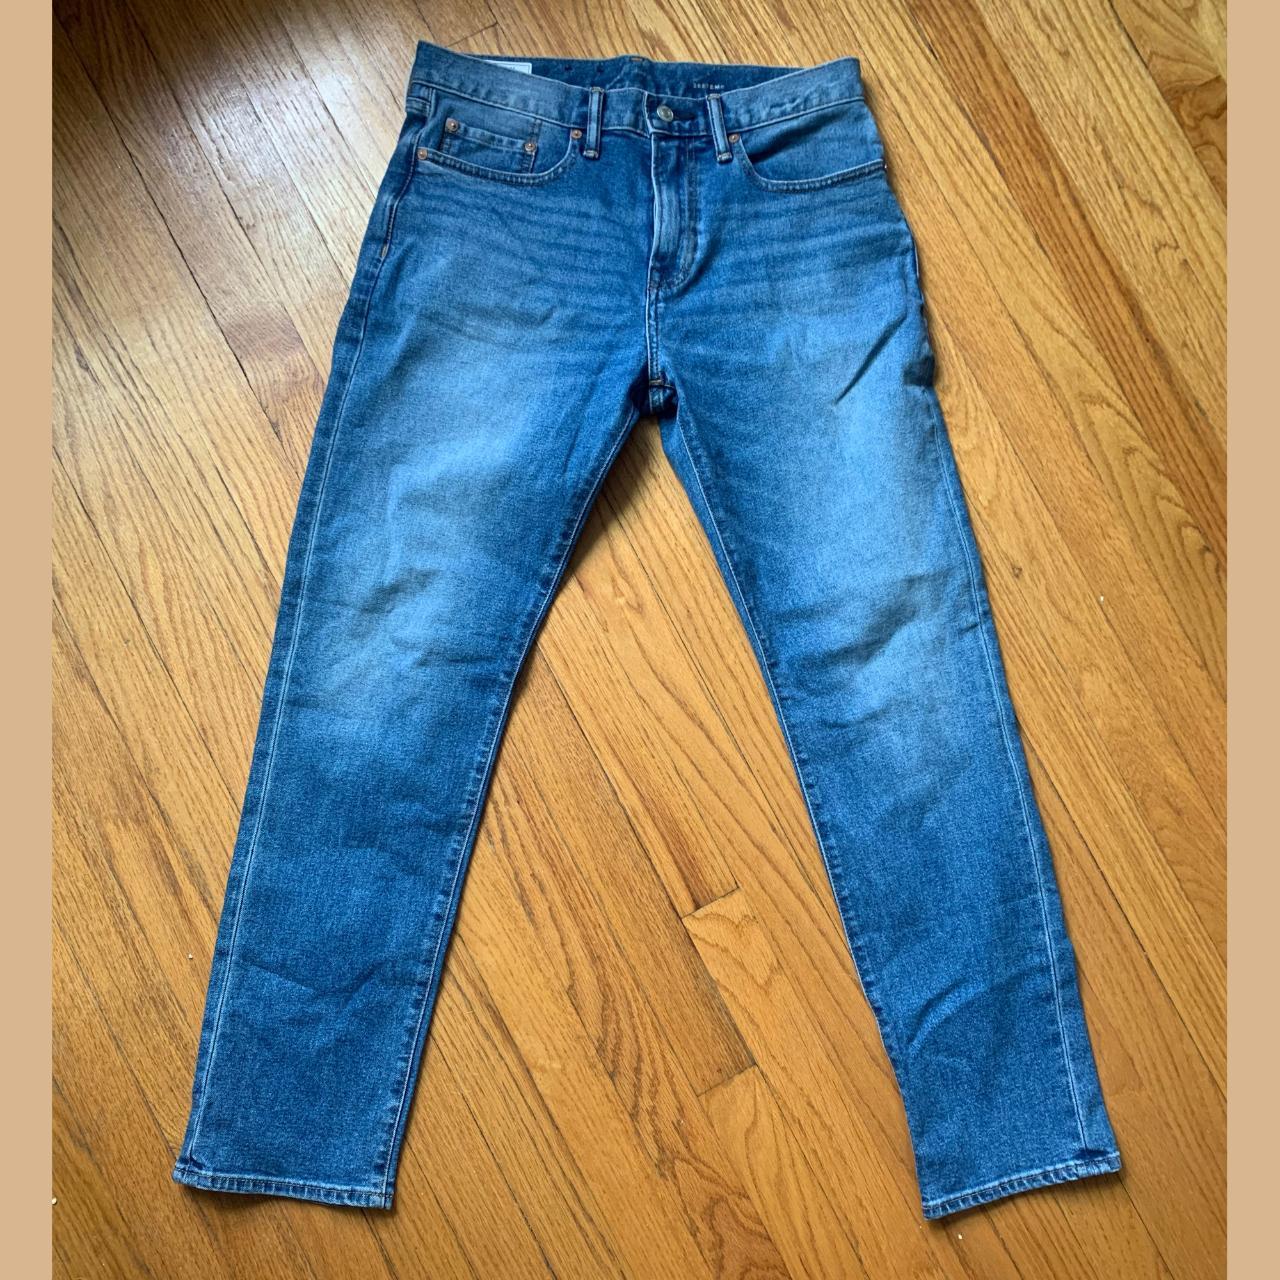 Excellent condition gap jeans Men's 30x30 slim fit - Depop